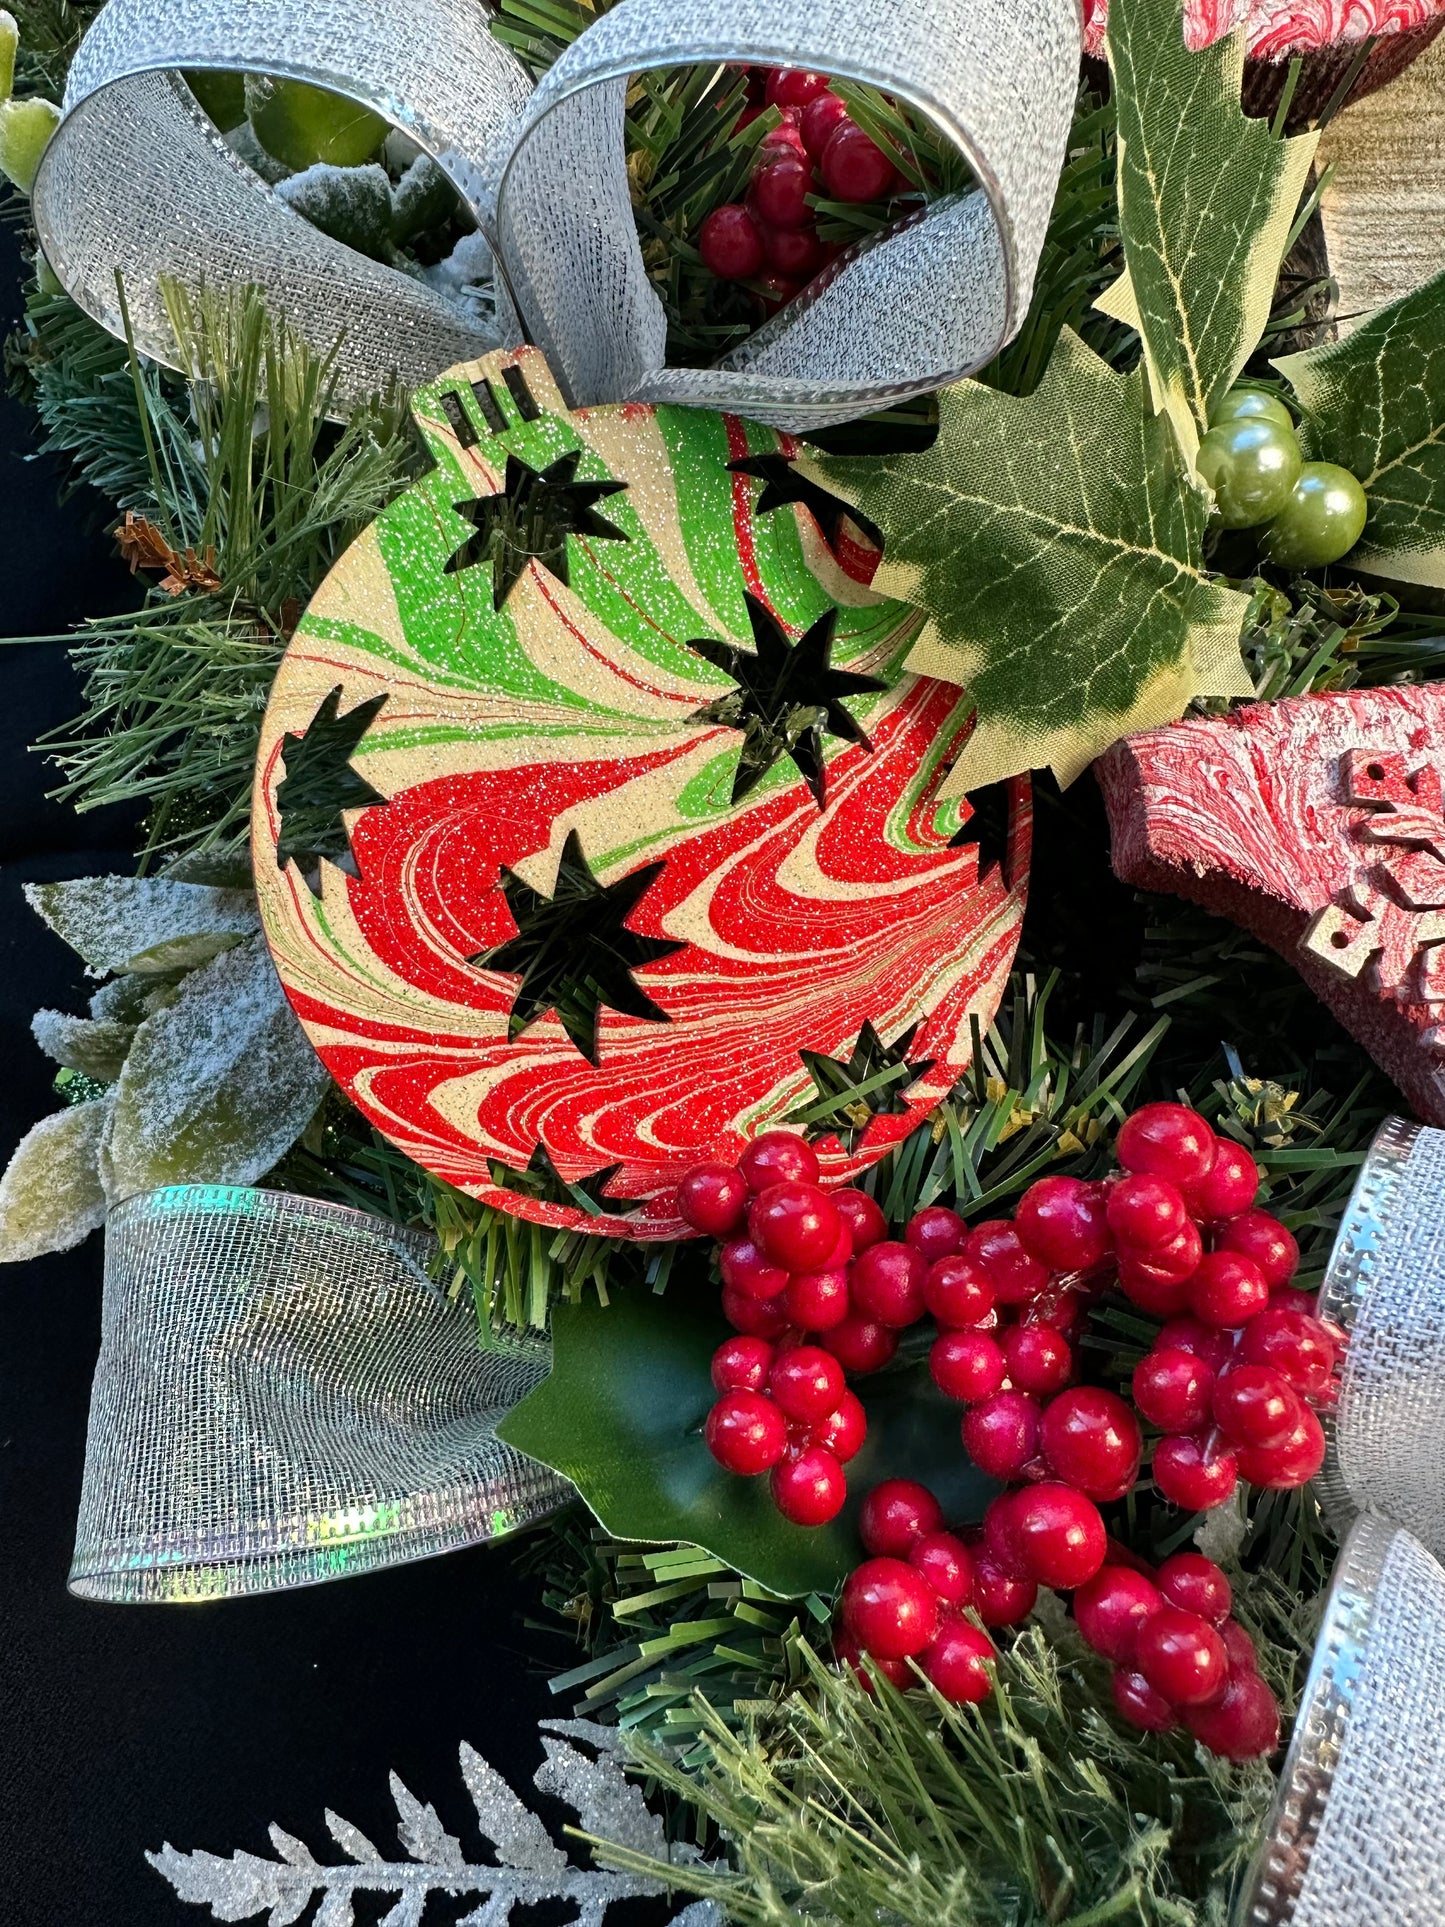 Ultimate Christmas Wreath Workshop Saturday, December 9